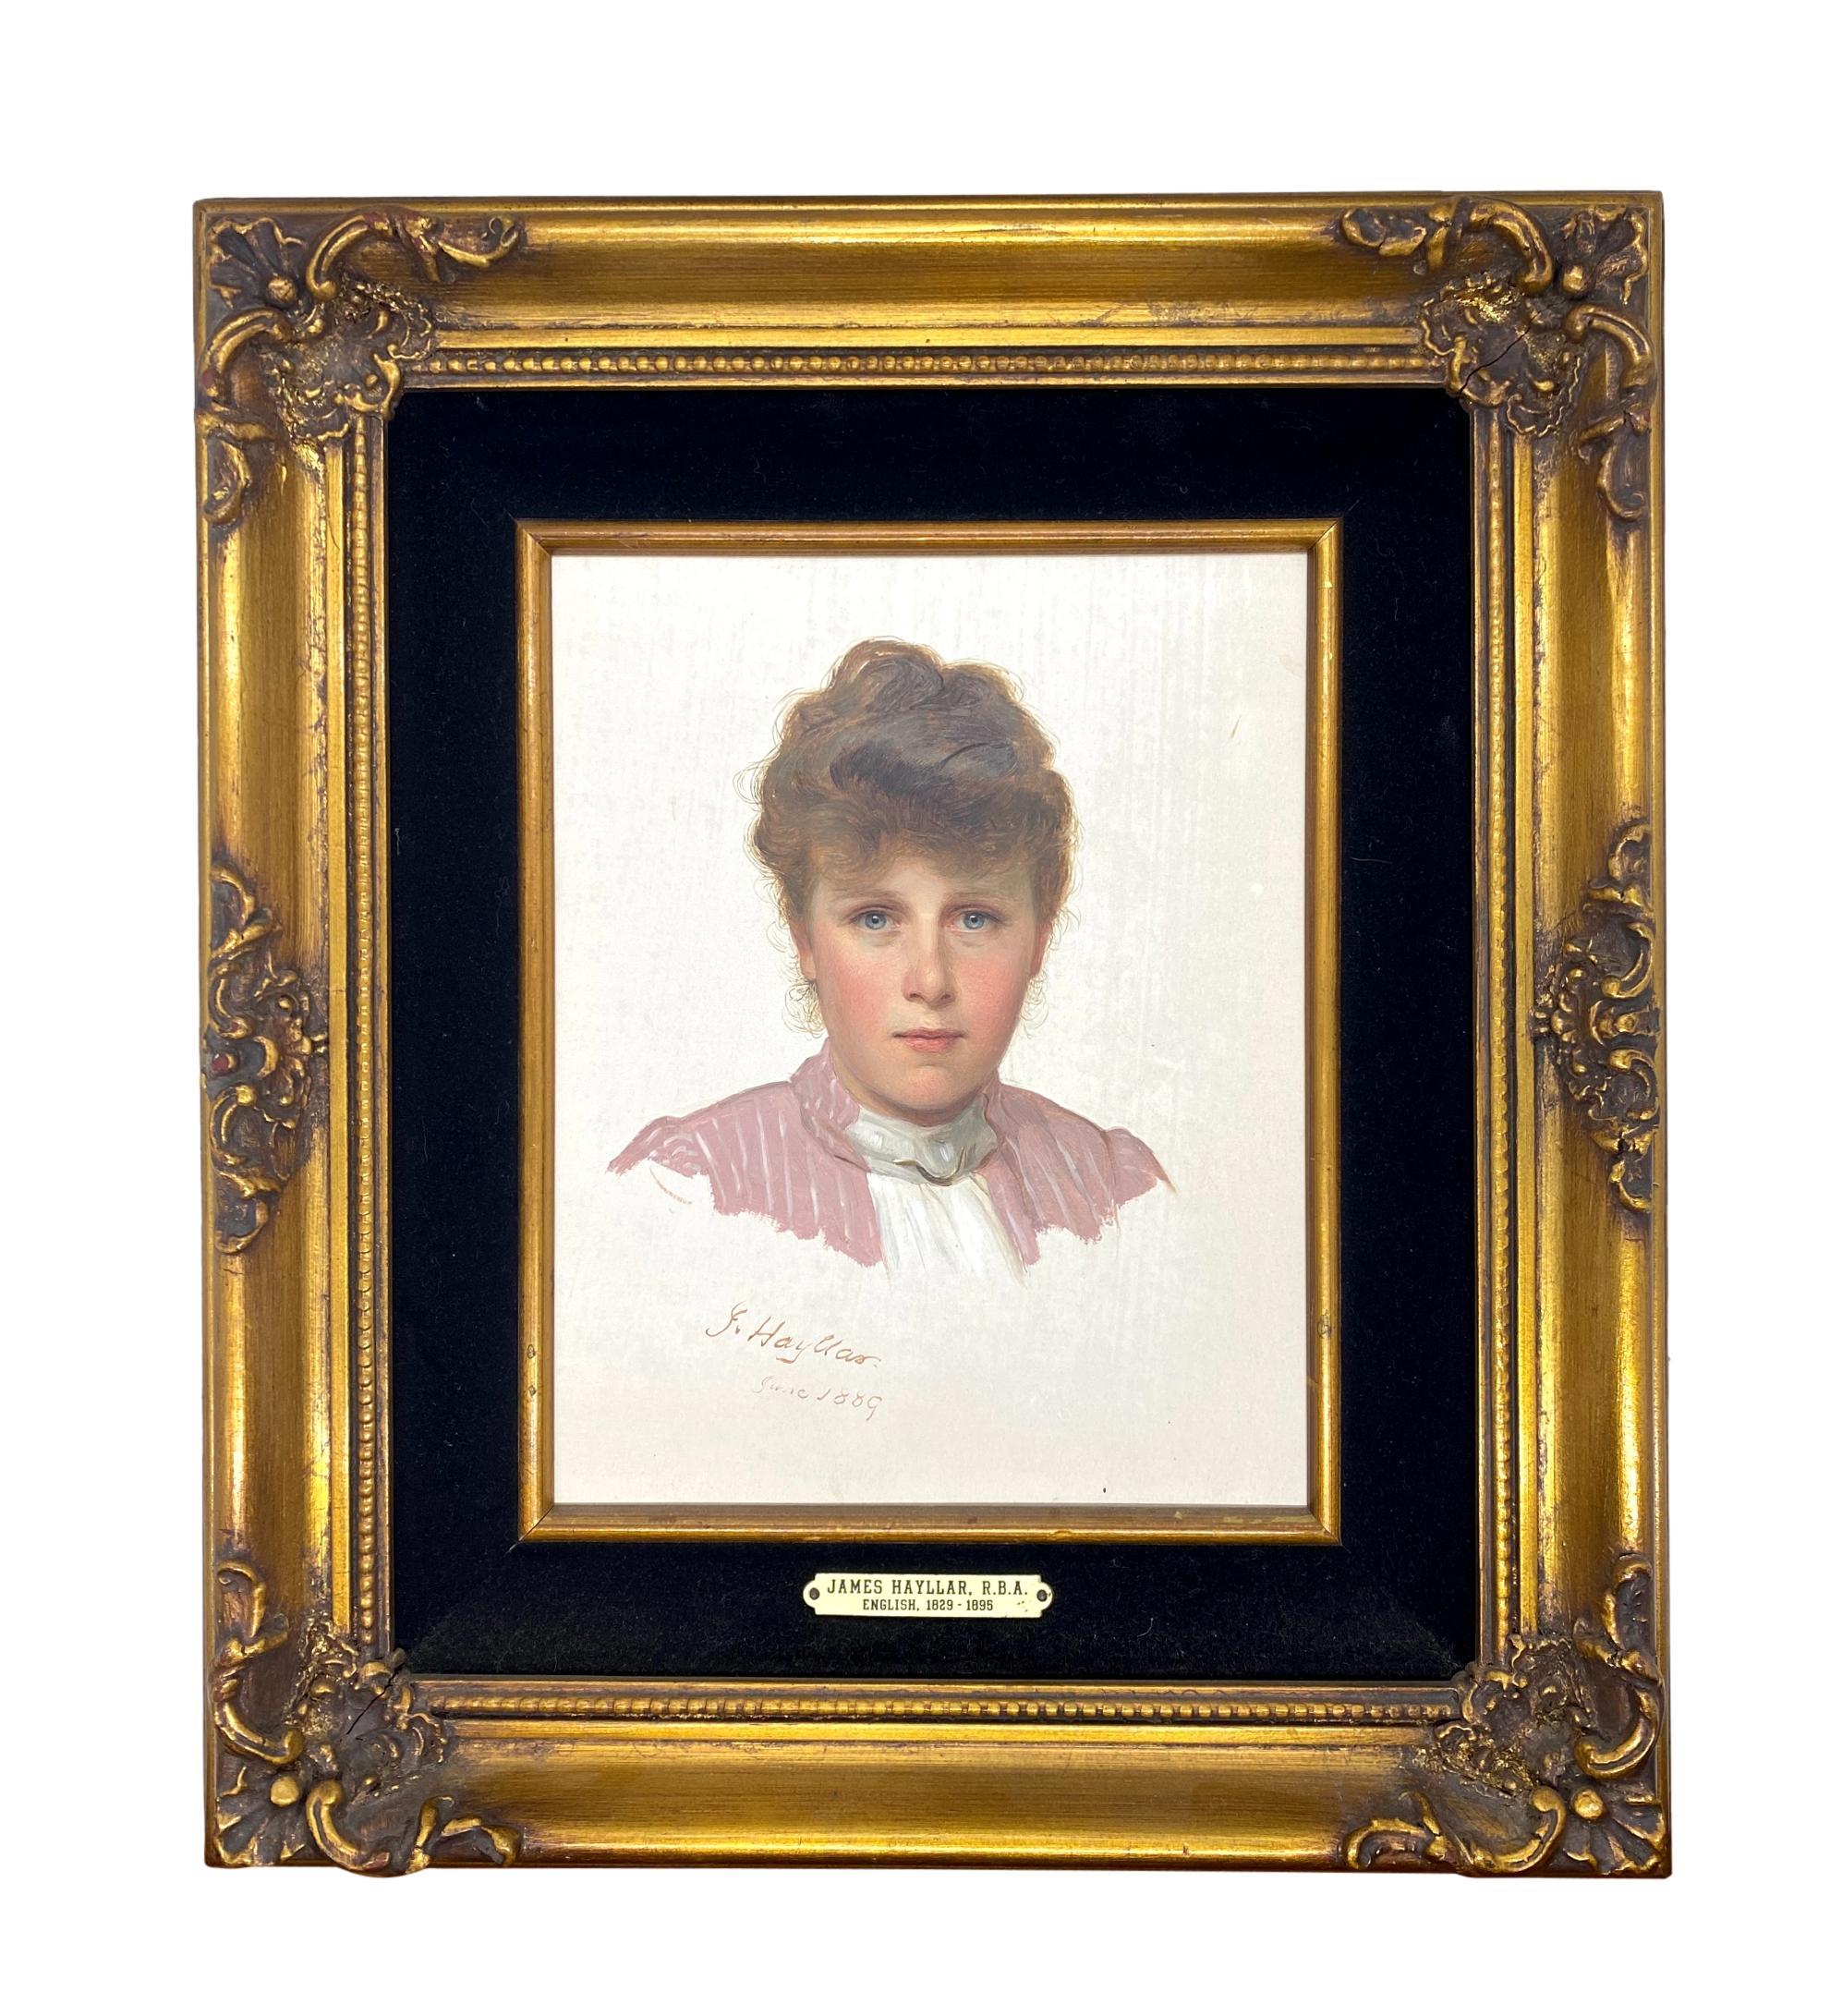 James Hayllar, R.B.A.
Britannique, 1829-1920

Portrait d'une jeune femme
Signé, daté, 